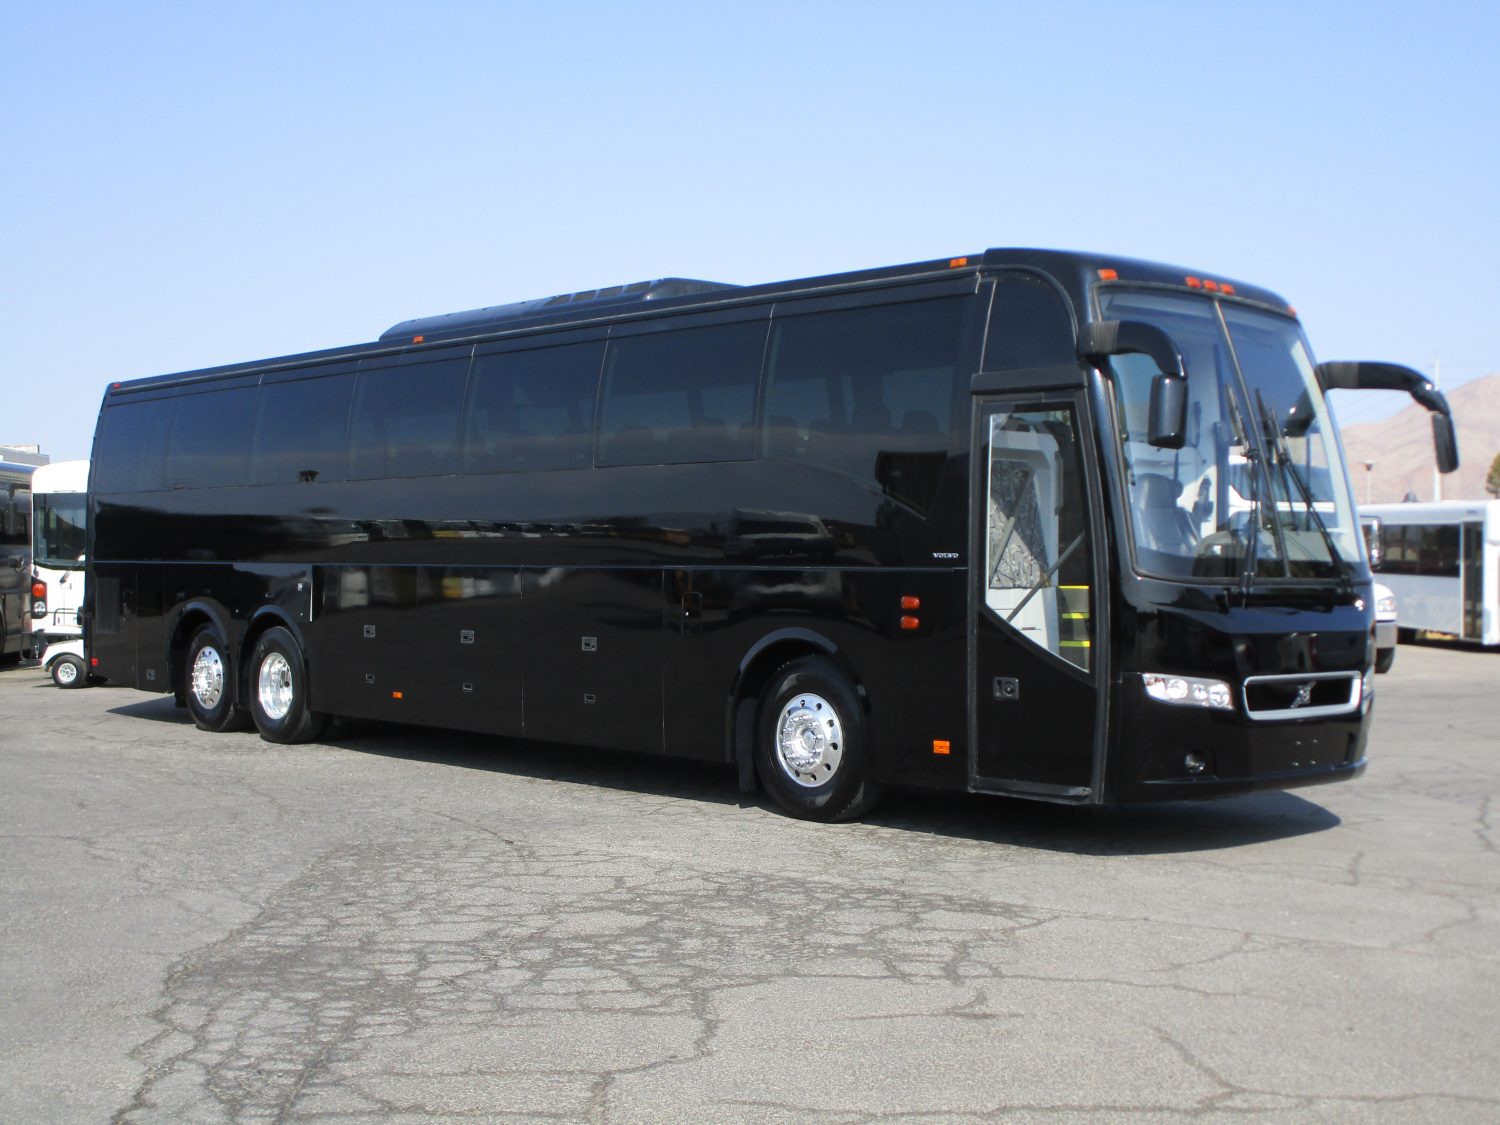 tour bus for sale las vegas